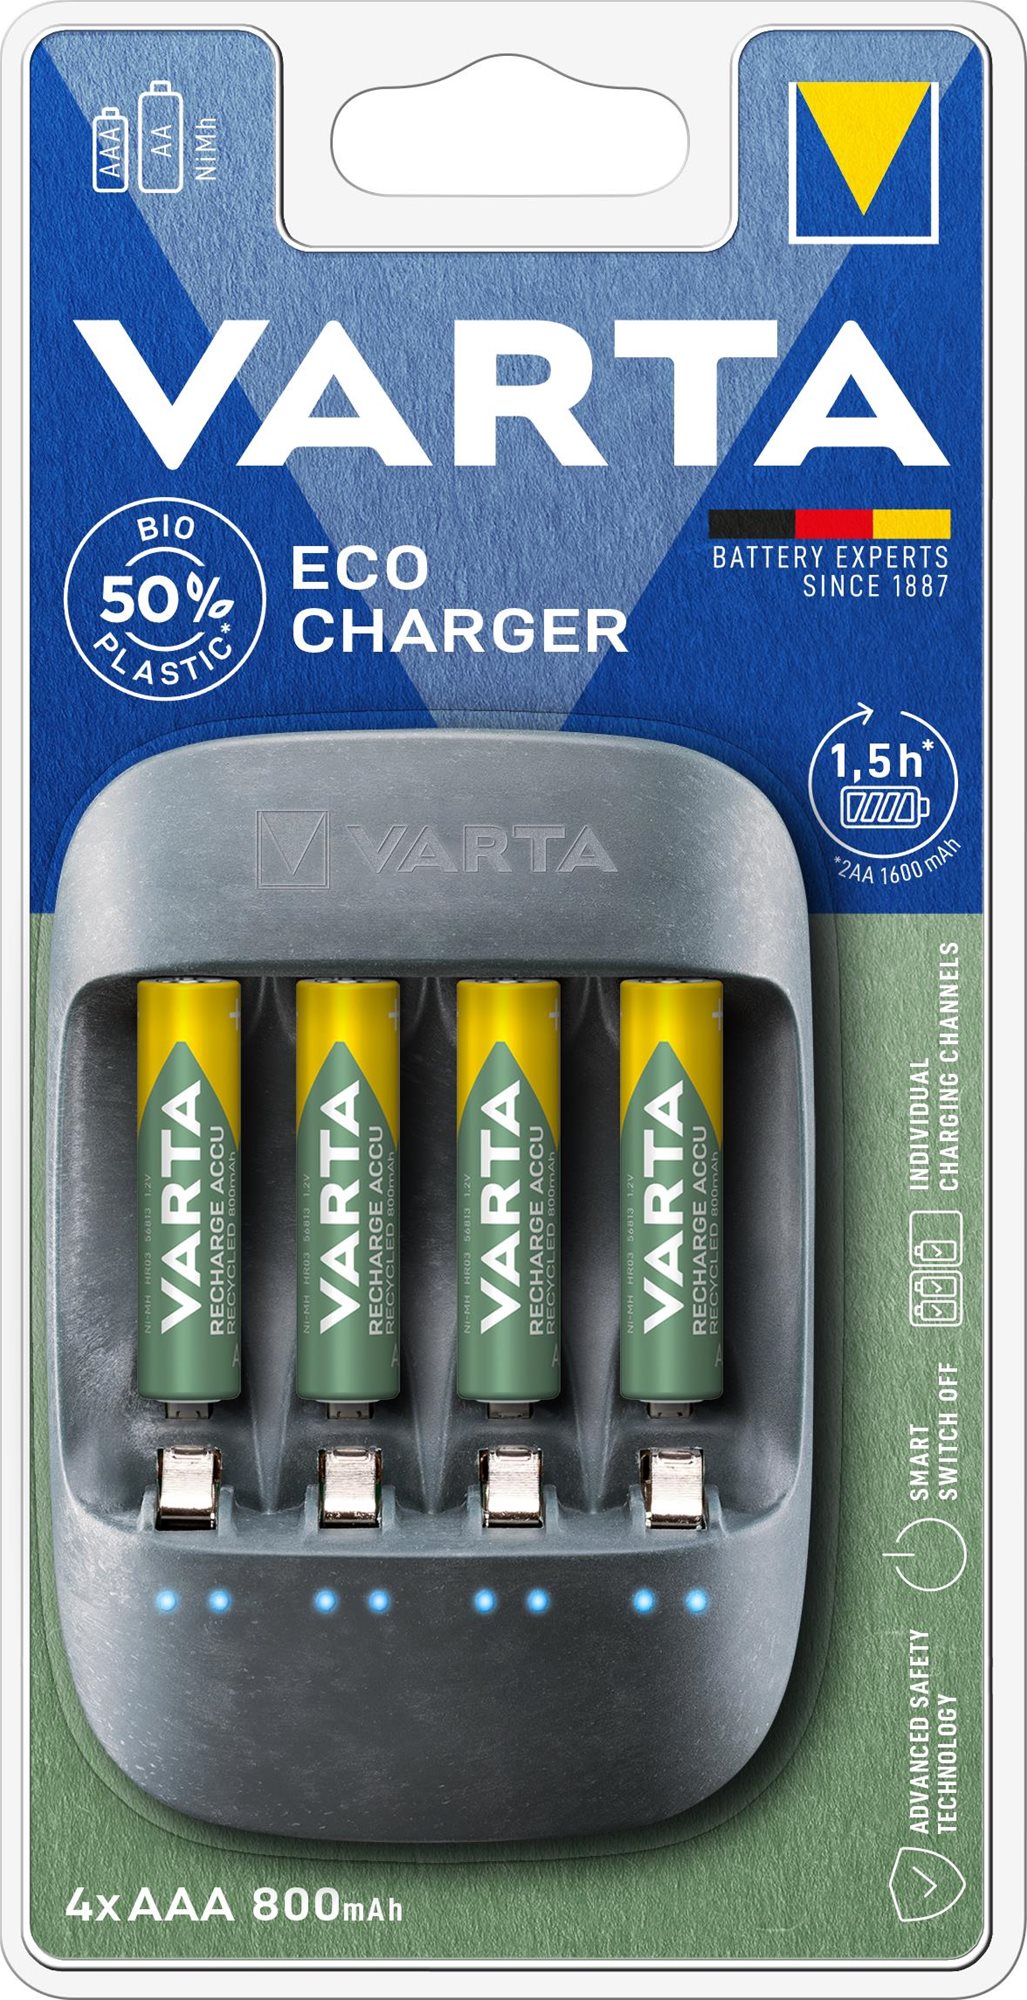 Töltő és pótakkumulátor VARTA Eco Charger Töltő + 4 AAA 800 mAh Reycled R2U